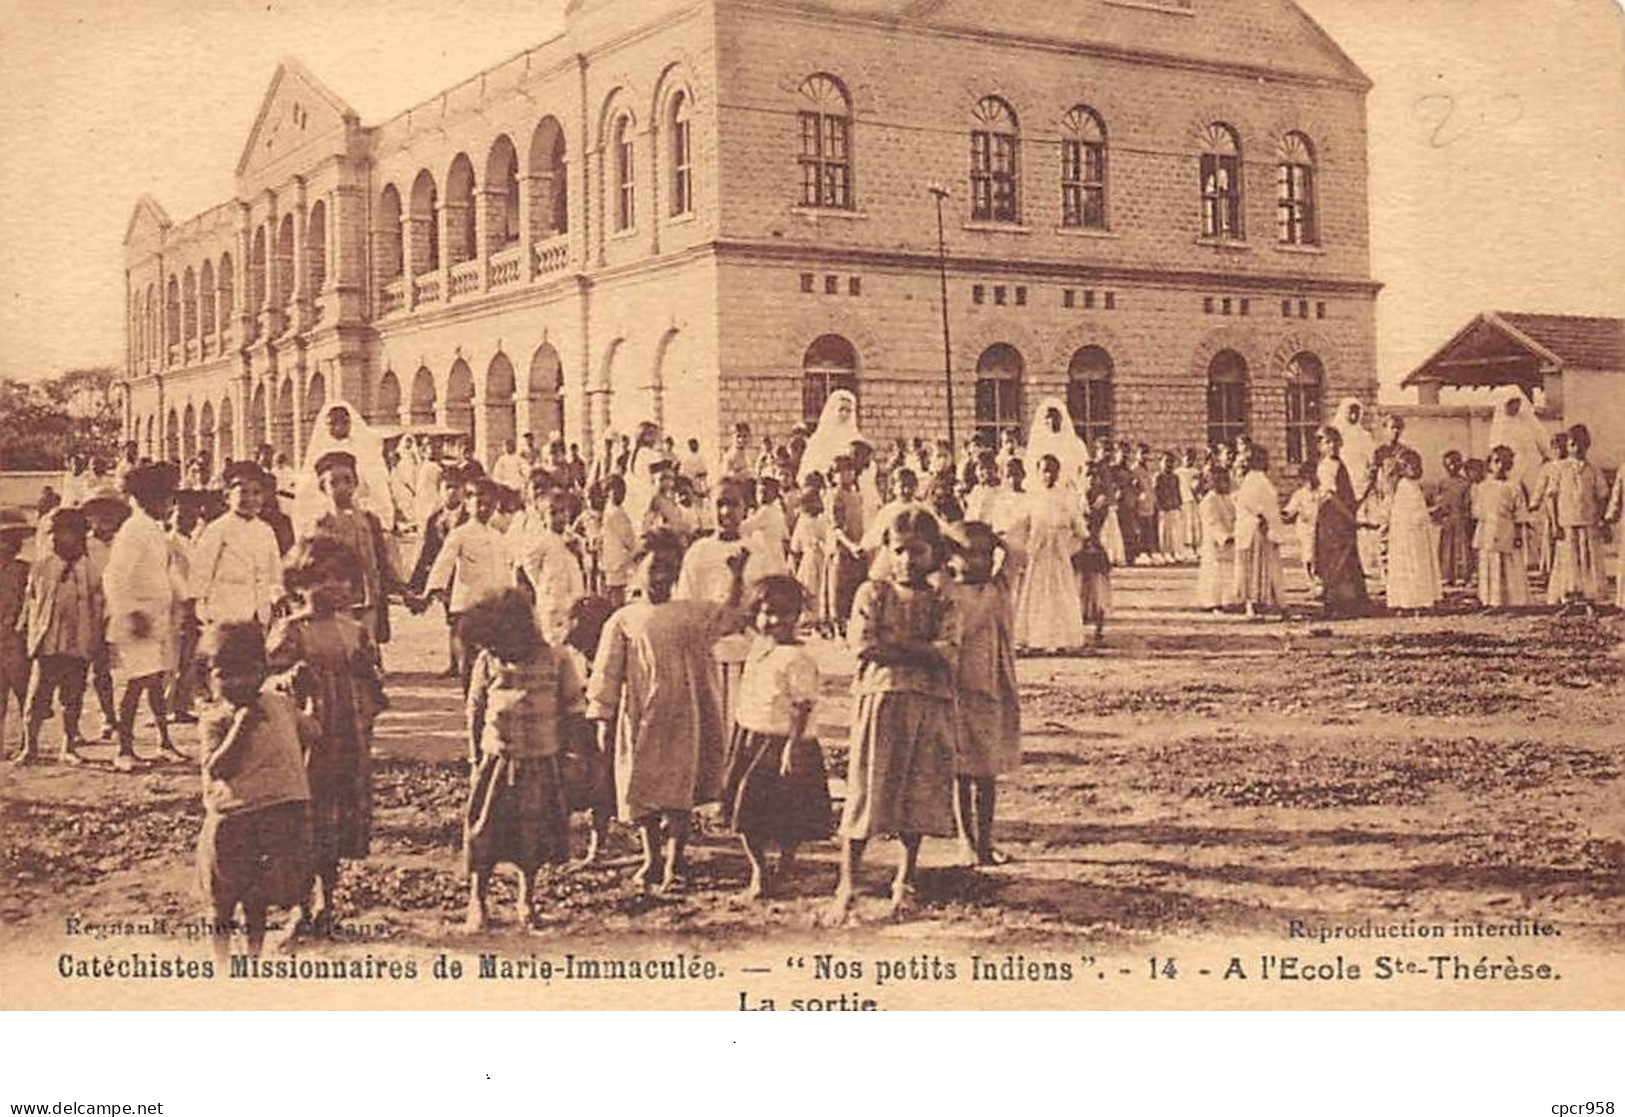 Inde - N°67627 - Catéchistes Missionnaires De Marie-Immaculée - Nos Petits Indiens - A L'école Ste-Thérèse - La Sortie - Indien